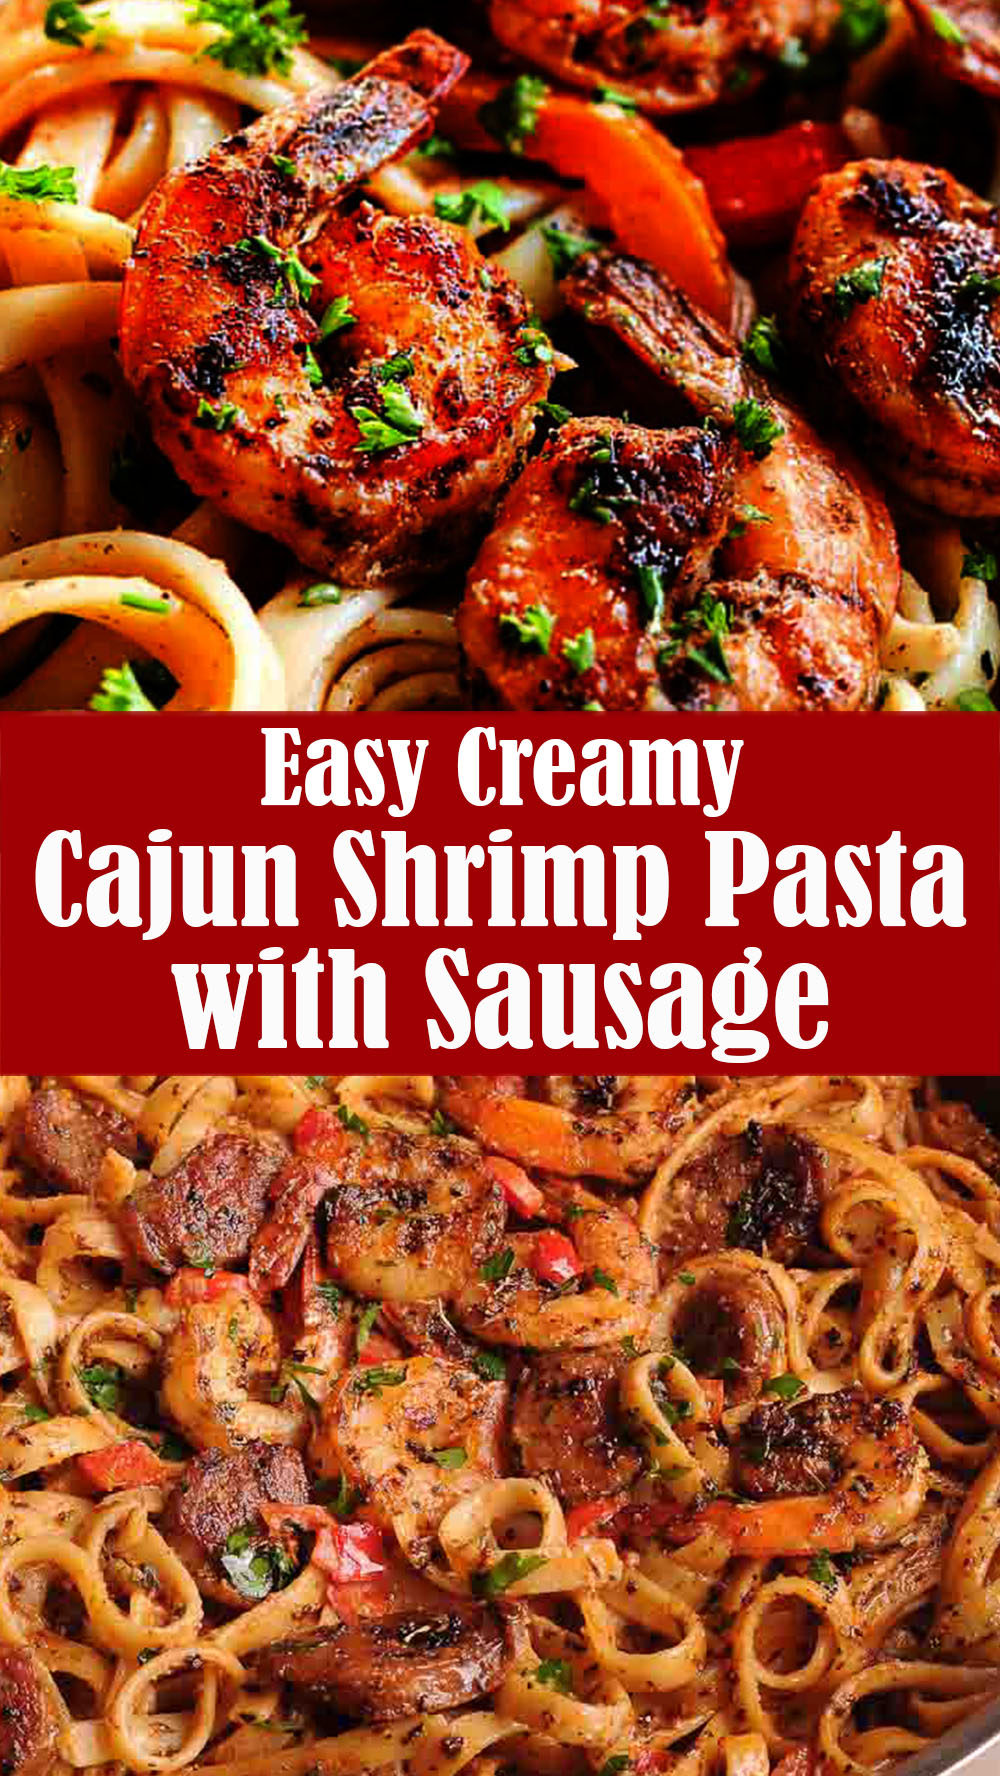 Easy Creamy Cajun Shrimp Pasta with Sausage